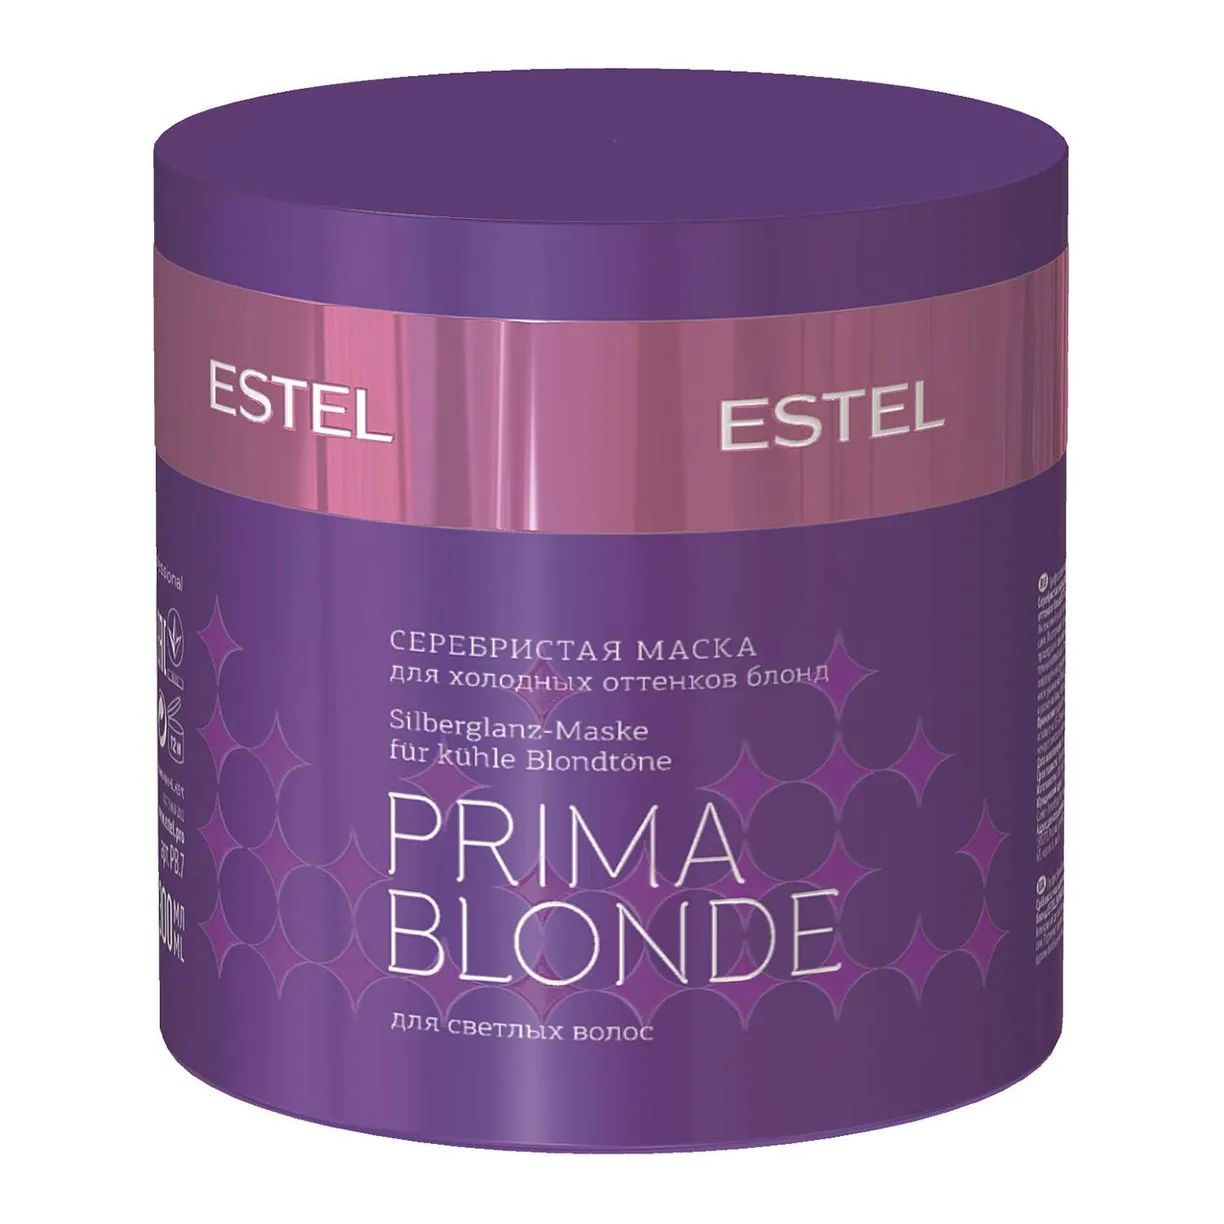 Маска для волос Estel Professional Prima Blonde Mask 300 мл набор estel professional prima blonde для холодных оттенков блонд